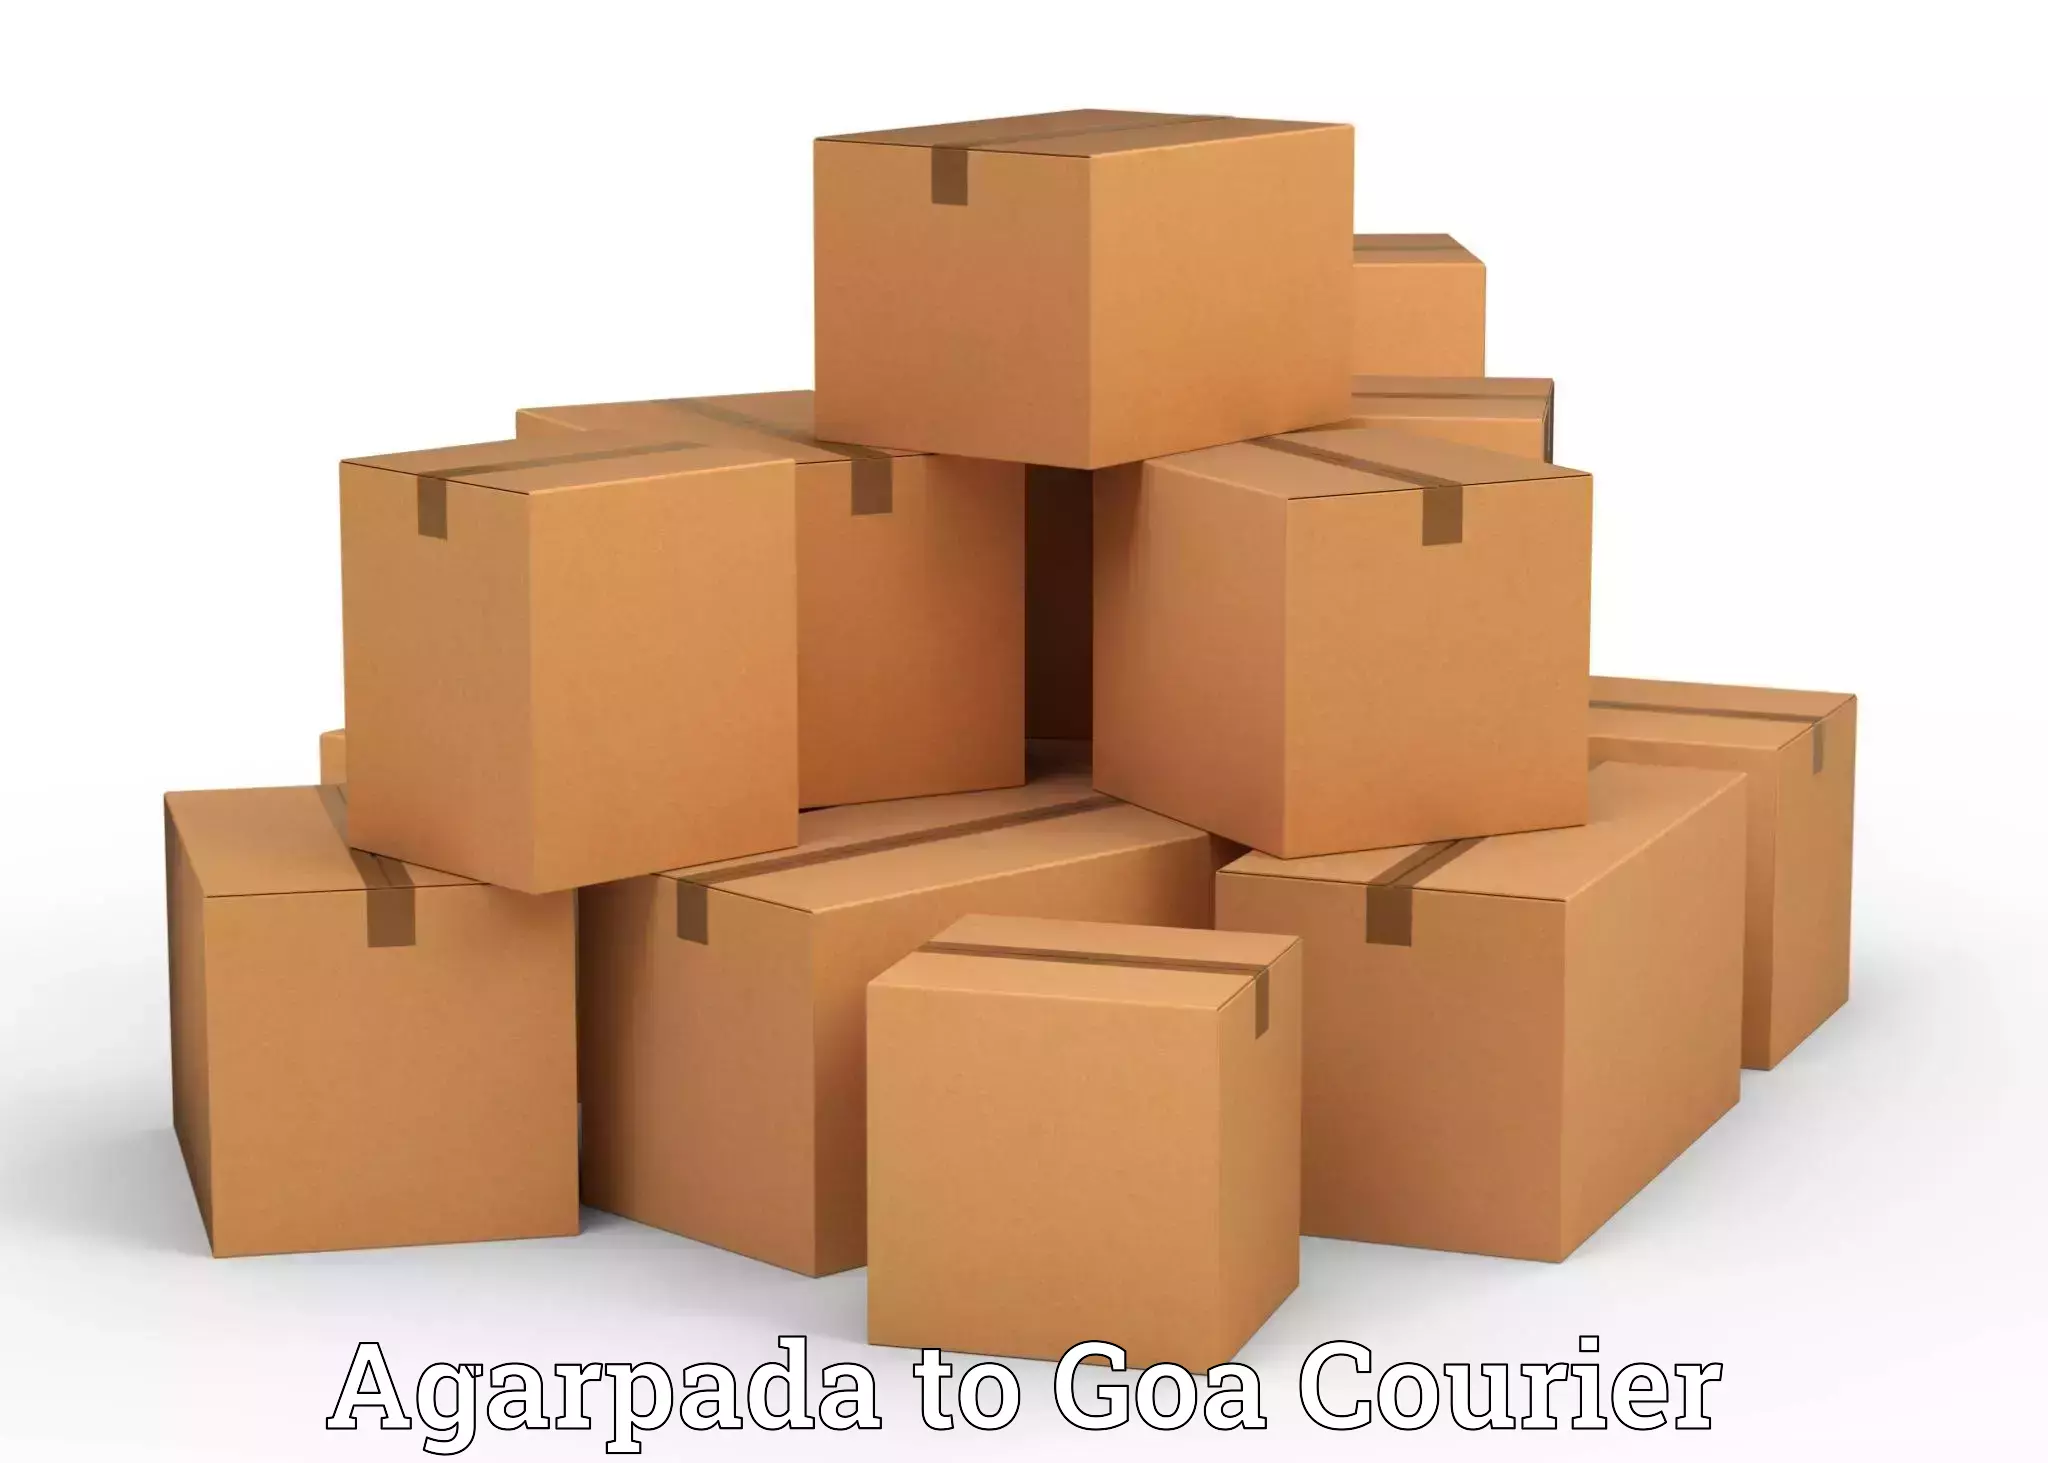 Home shifting experts Agarpada to Goa